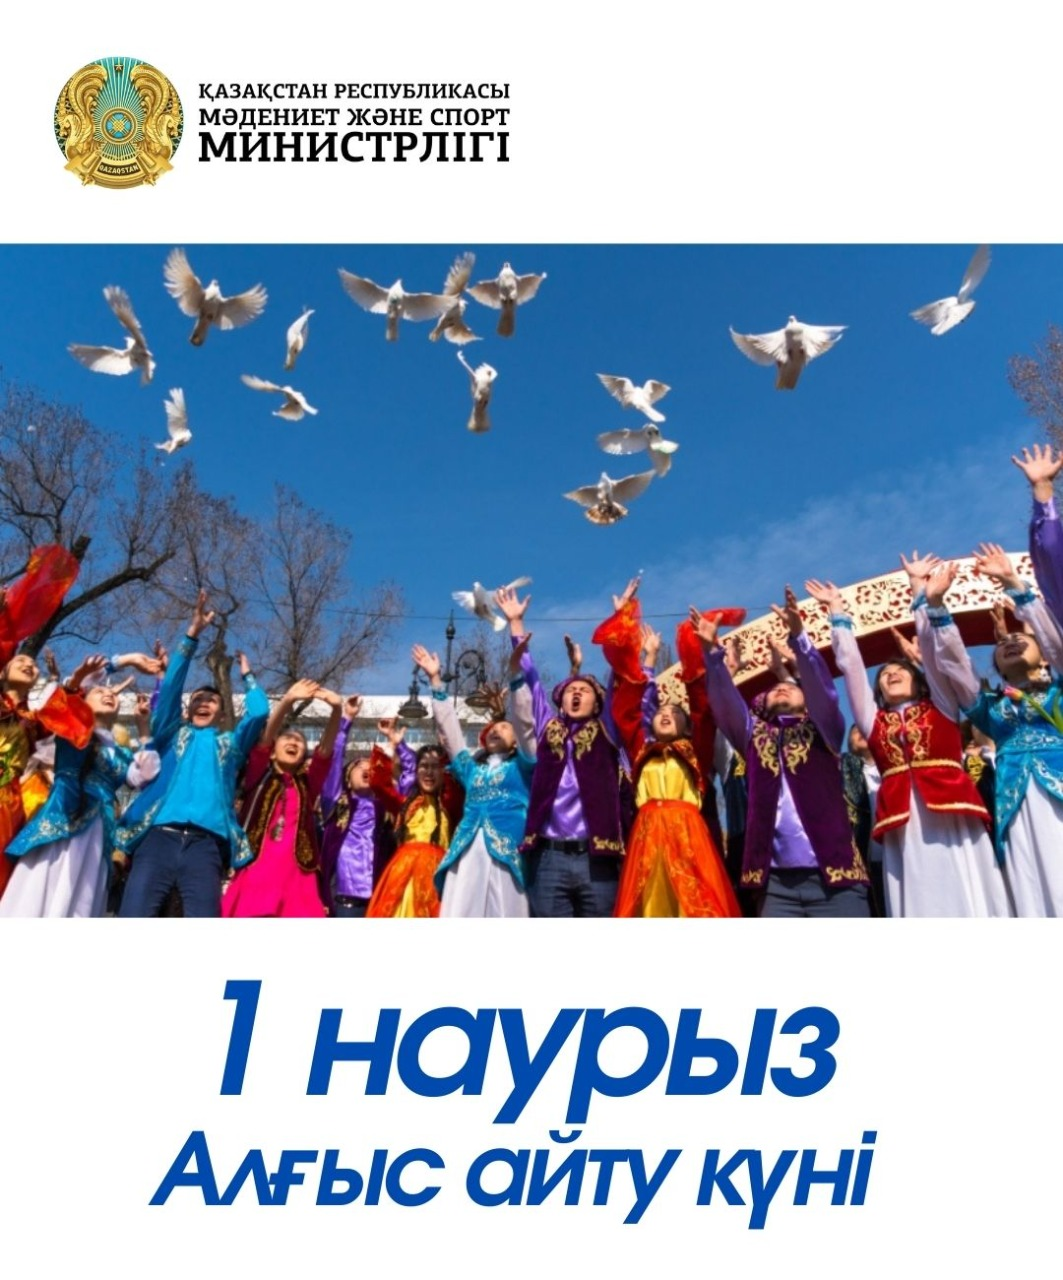 Март - месяц национальных традиций и культуры Казахстана